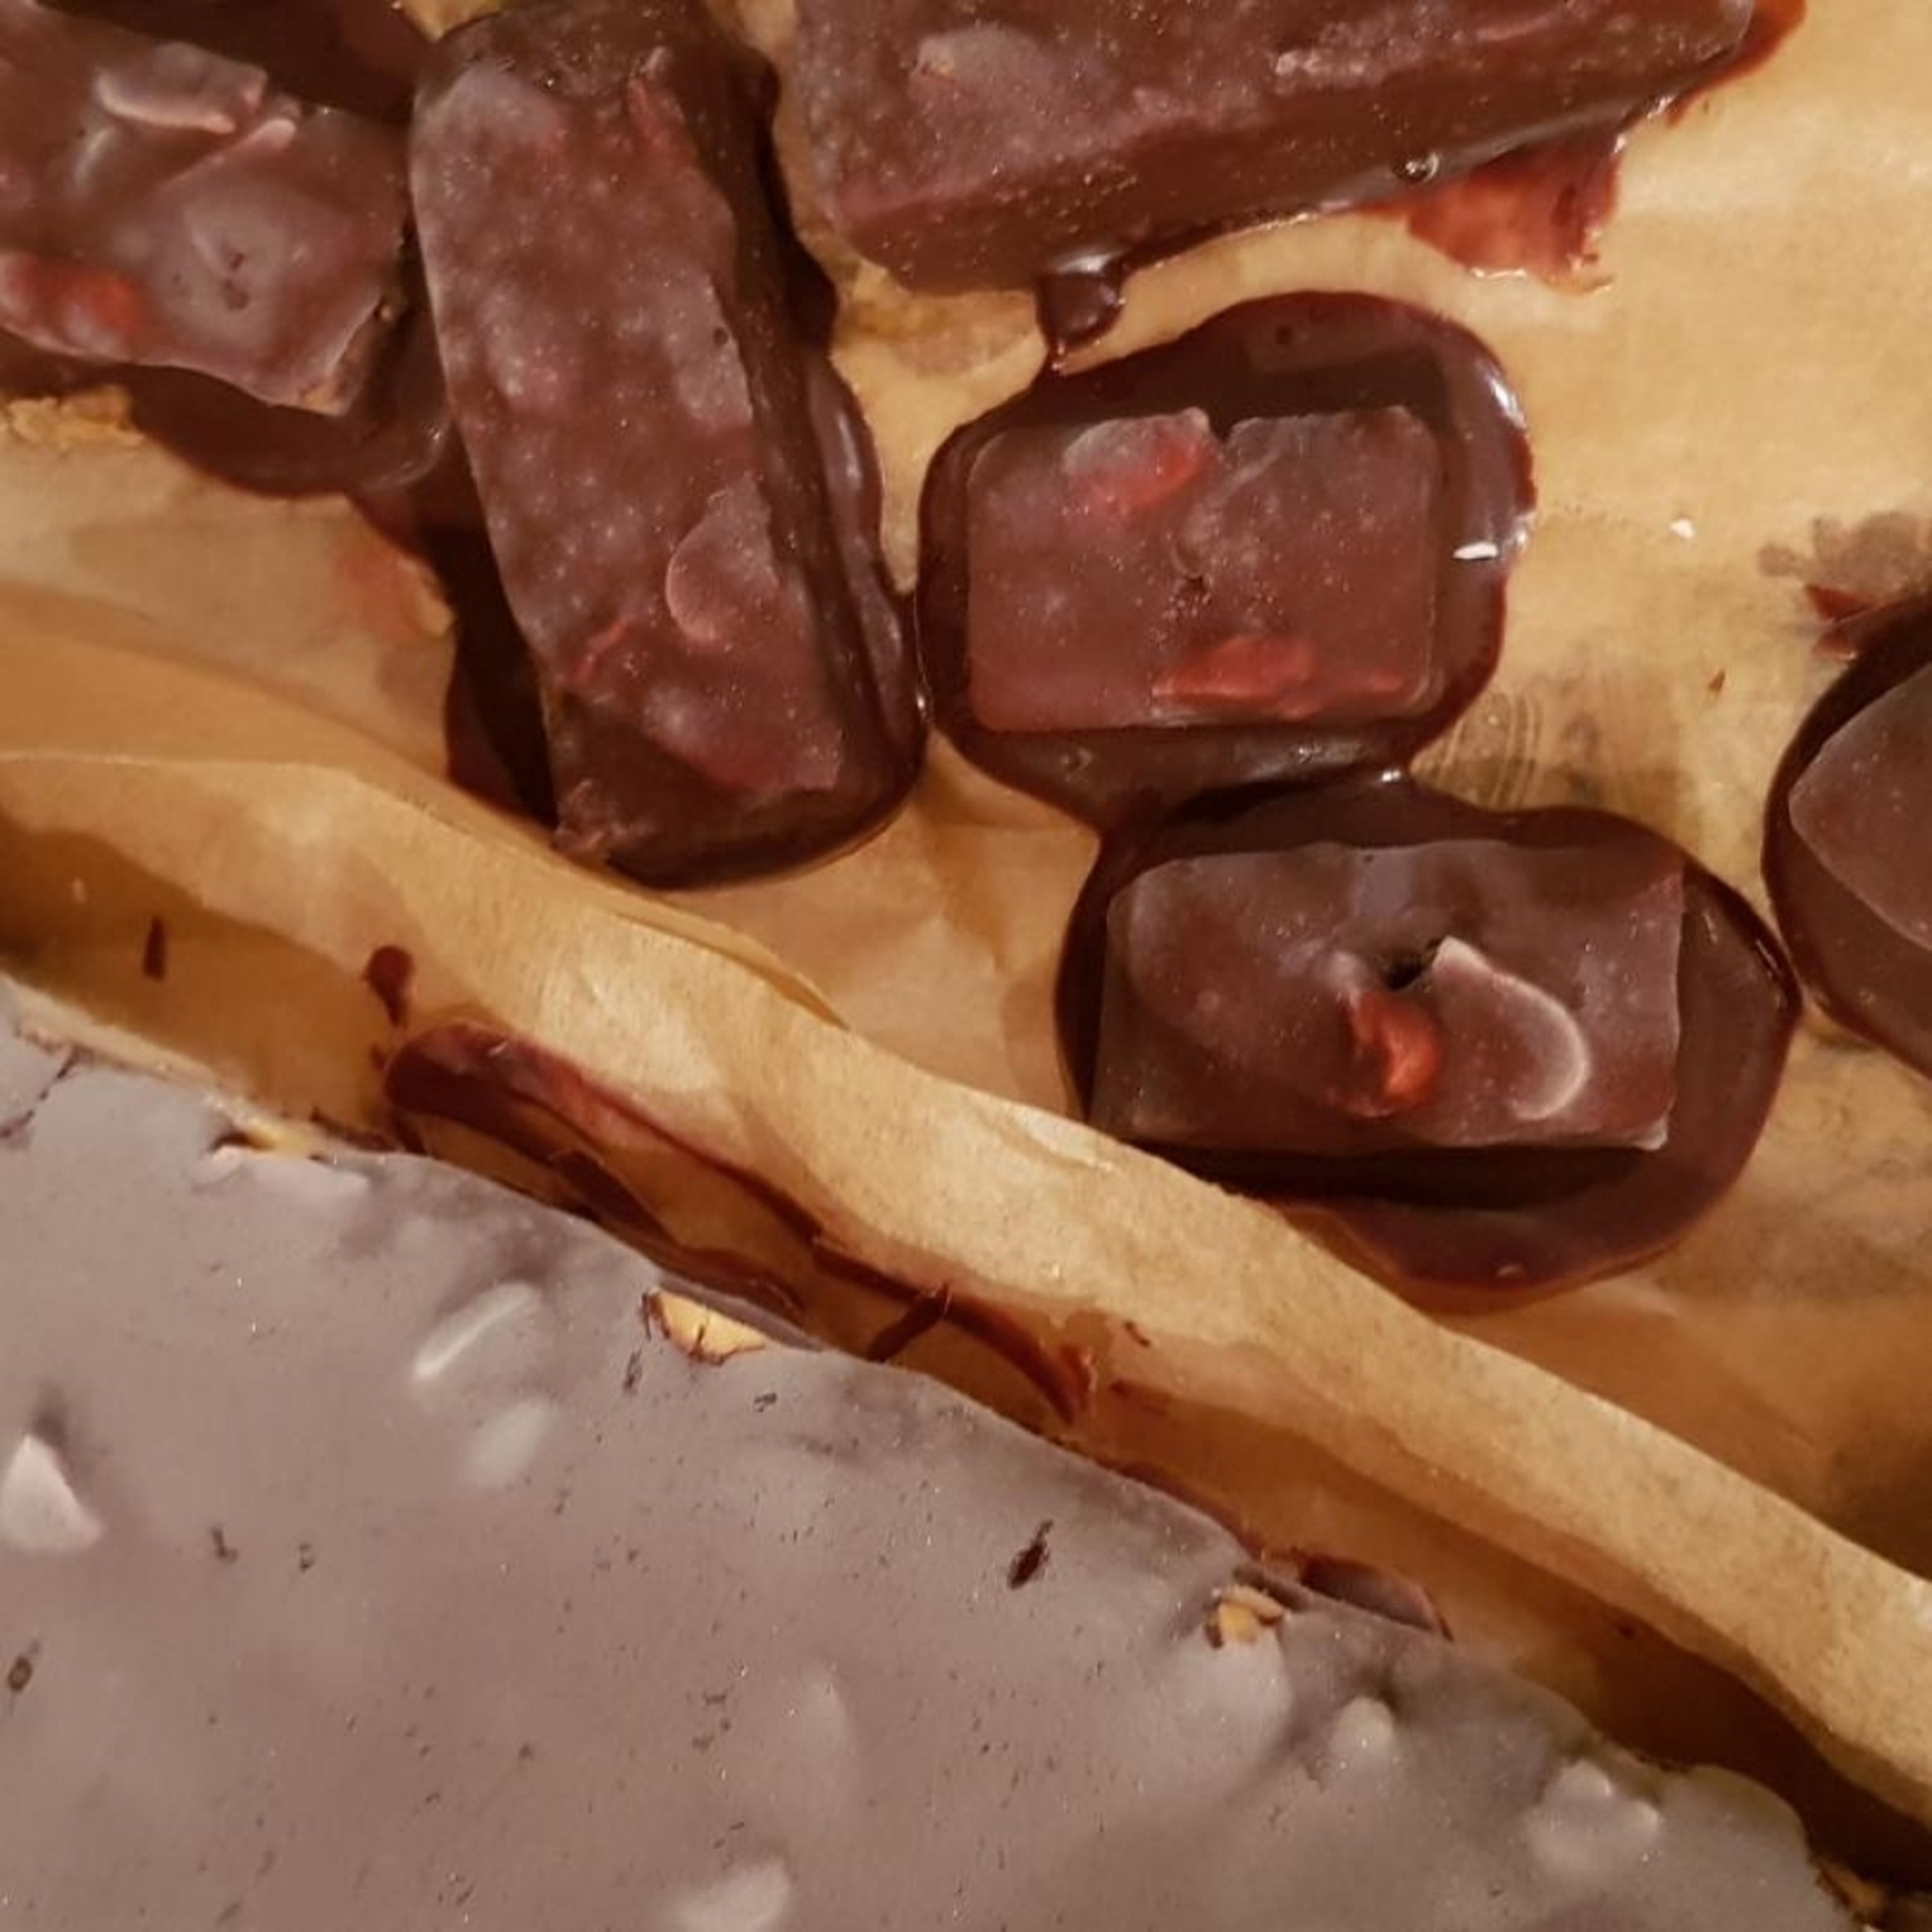 Die Schokolade Schmelzen und entweder darauf verteilen oder schon die geschnittenen Stücke in der Schokolade wenden.